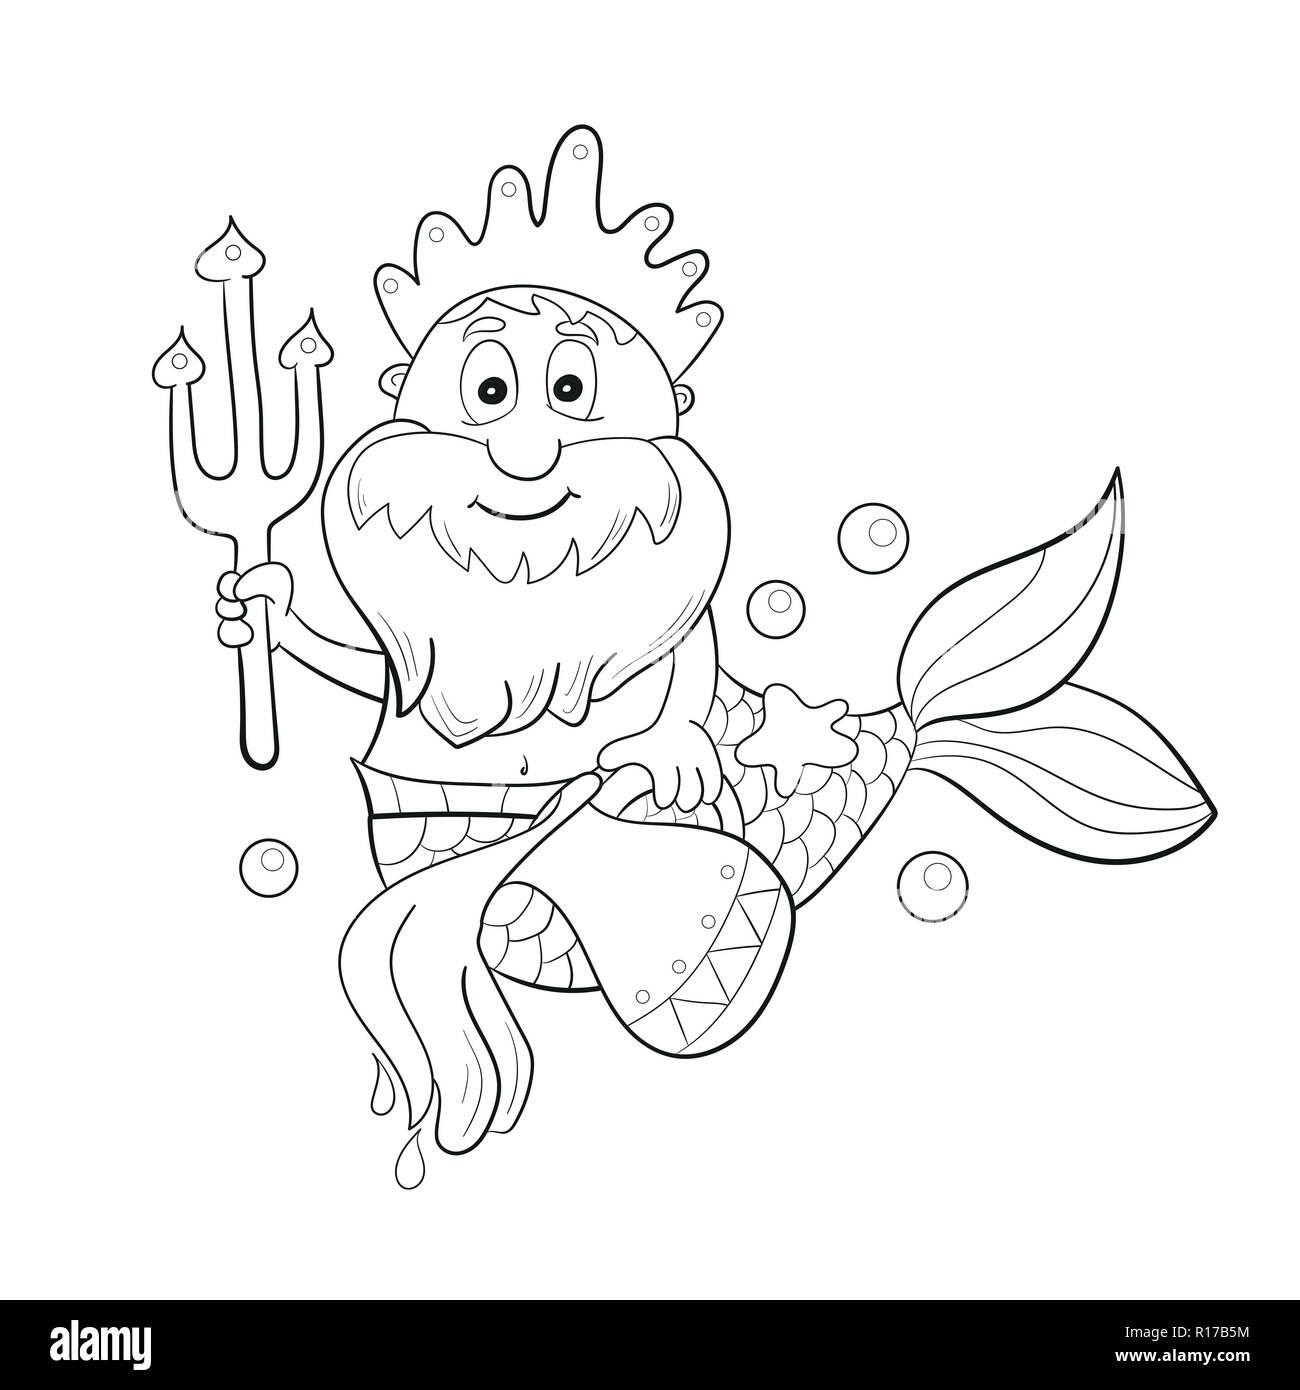 Horóscopo signo del zodíaco: acuario. Cartoon Poseidon. Colorear para niños Ilustración del Vector